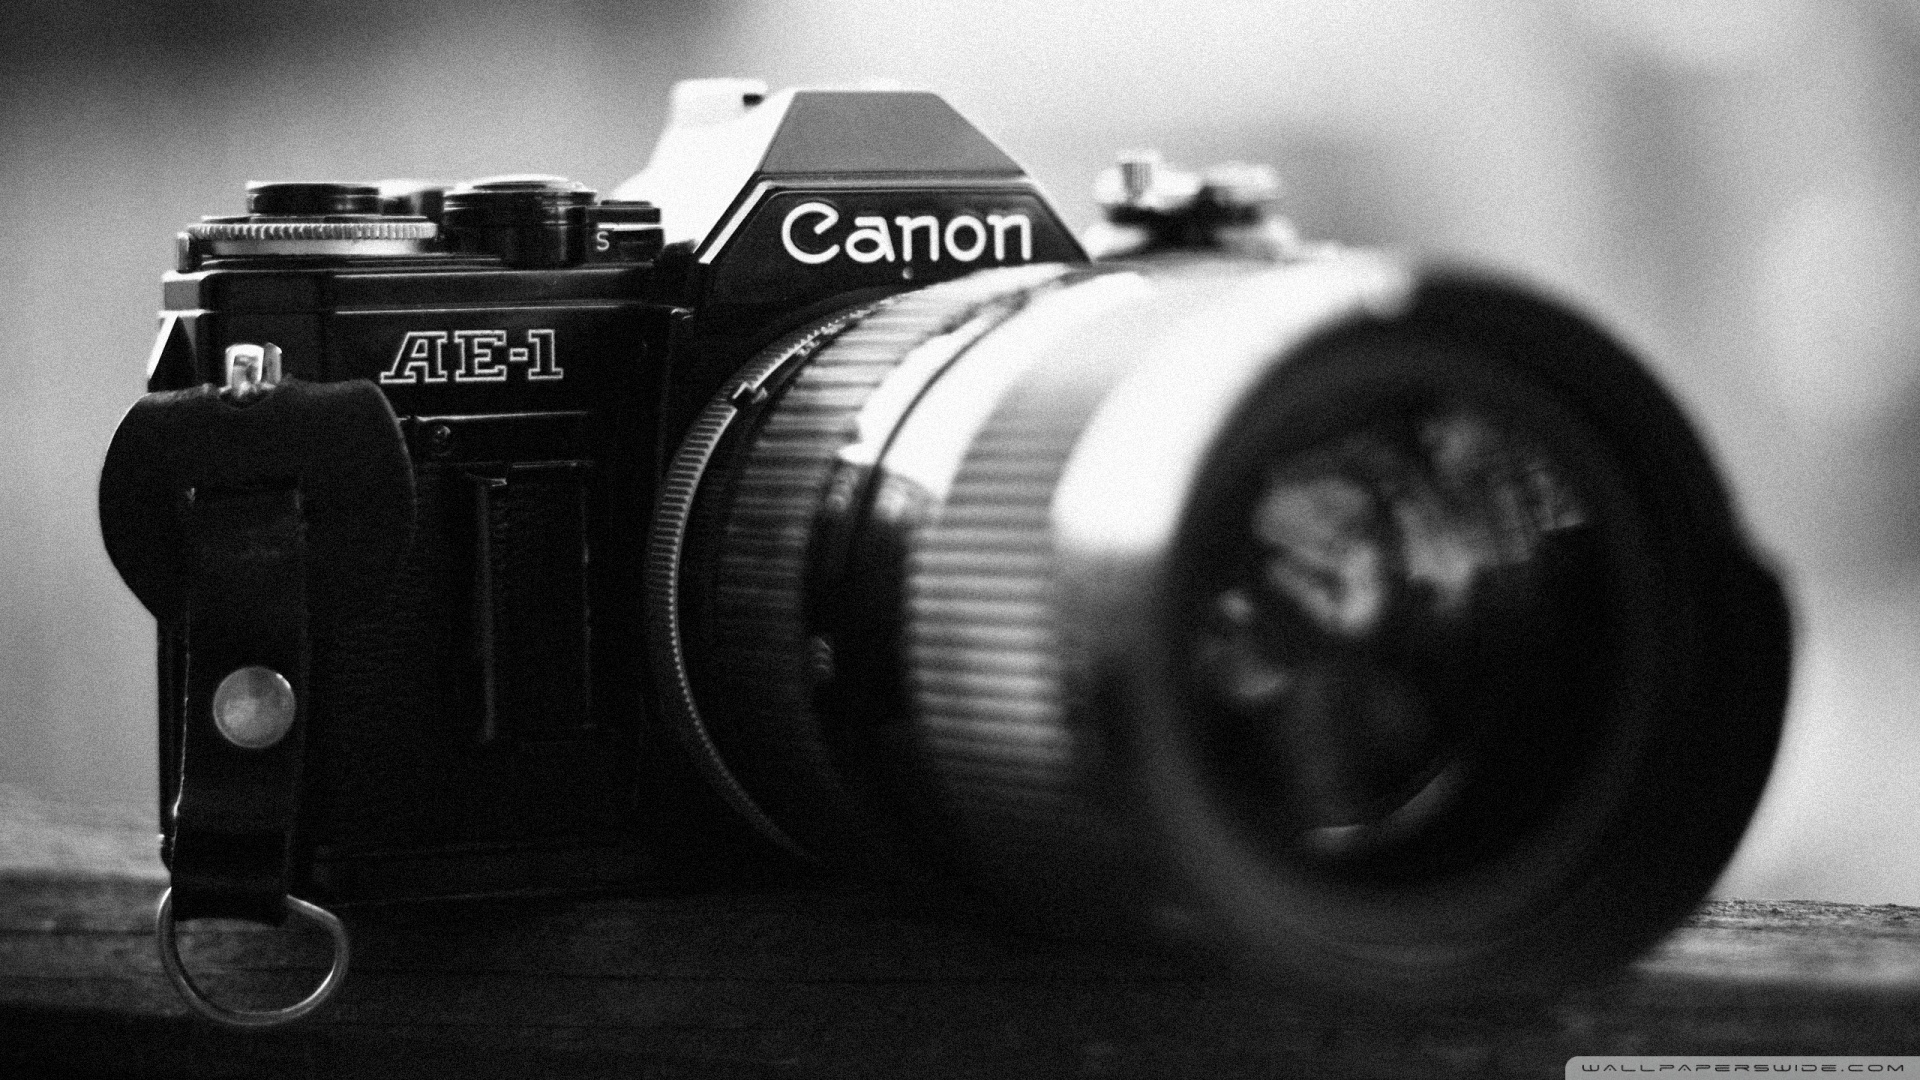 キヤノンデジタル一眼レフカメラ壁紙,カメラ,カメラレンズ,レンズ,ミラーレス一眼カメラ,一眼レフカメラ